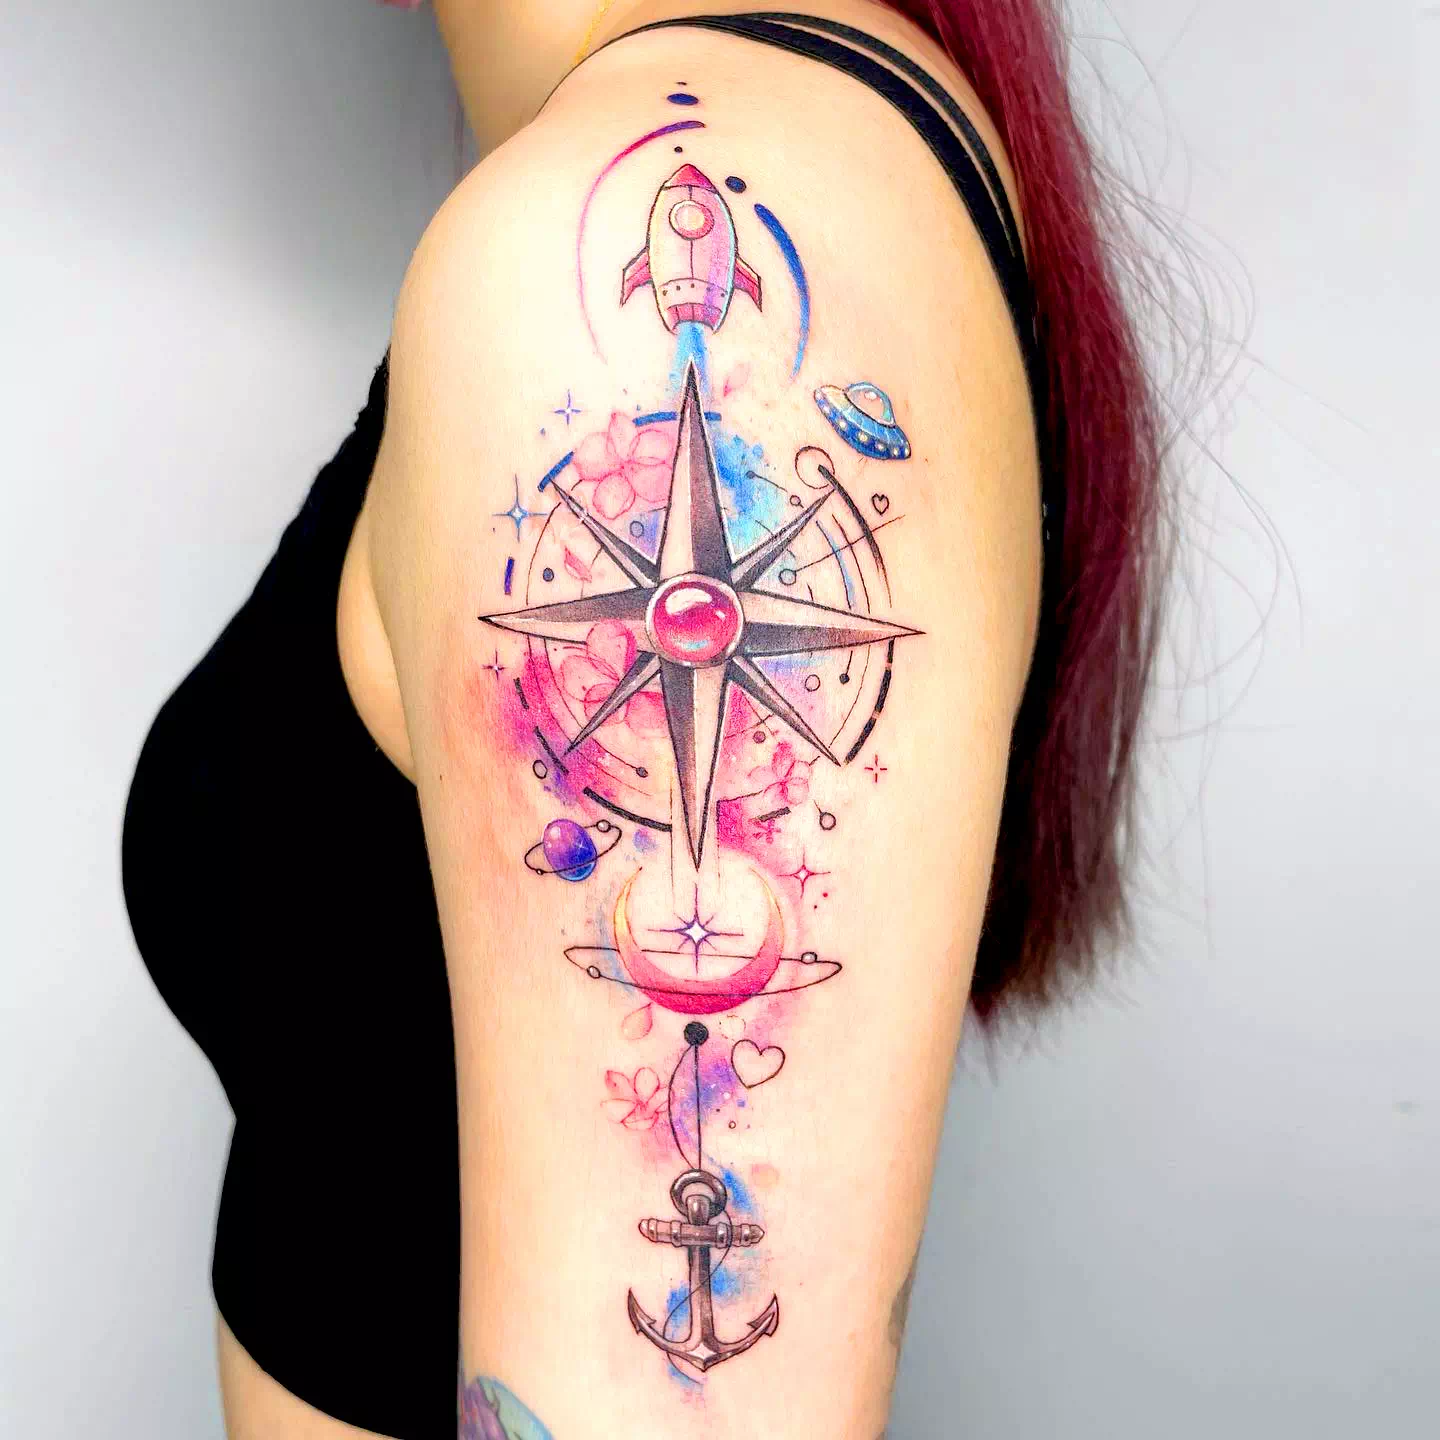 Tatuaje de una flecha con brújula azul en el antebrazo